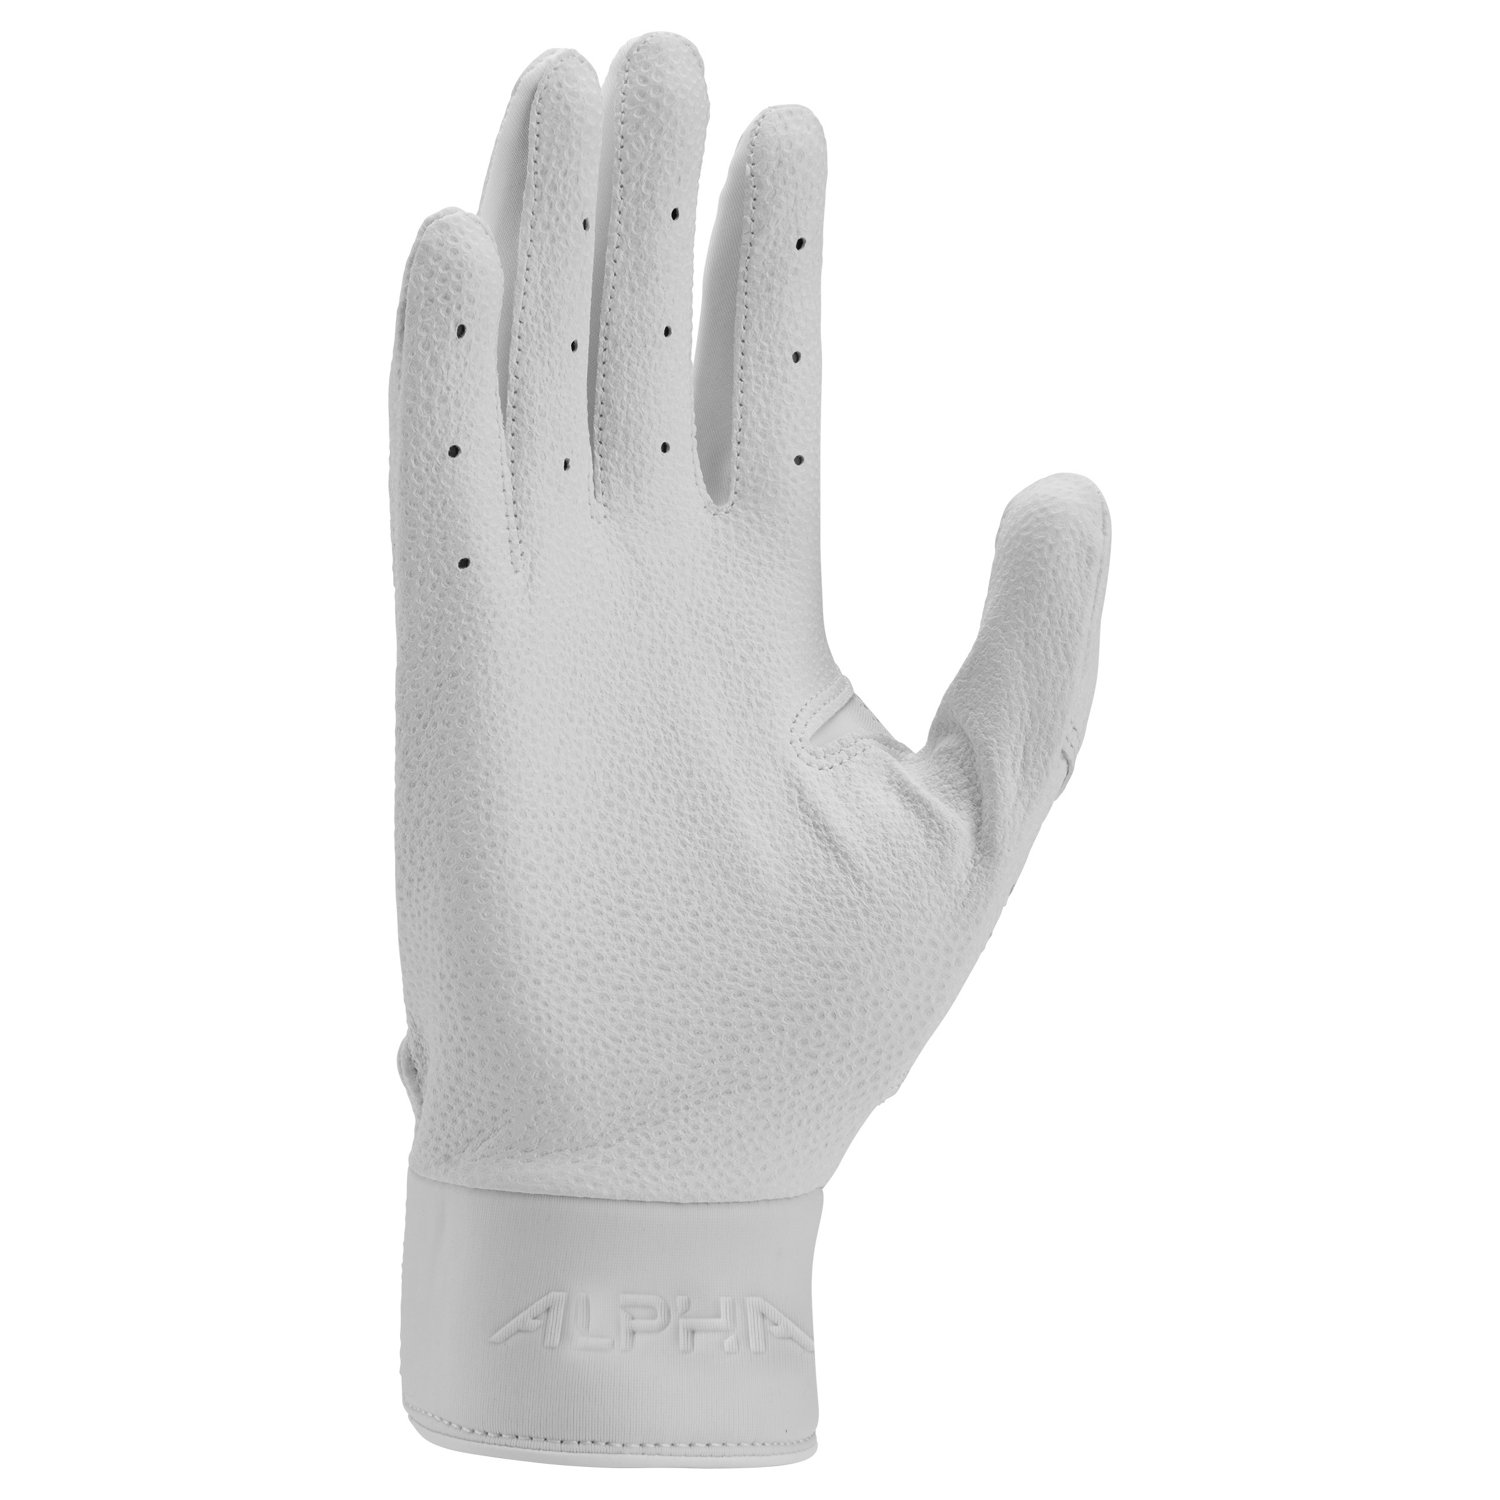 Batting Gloves - Varsity Gloves